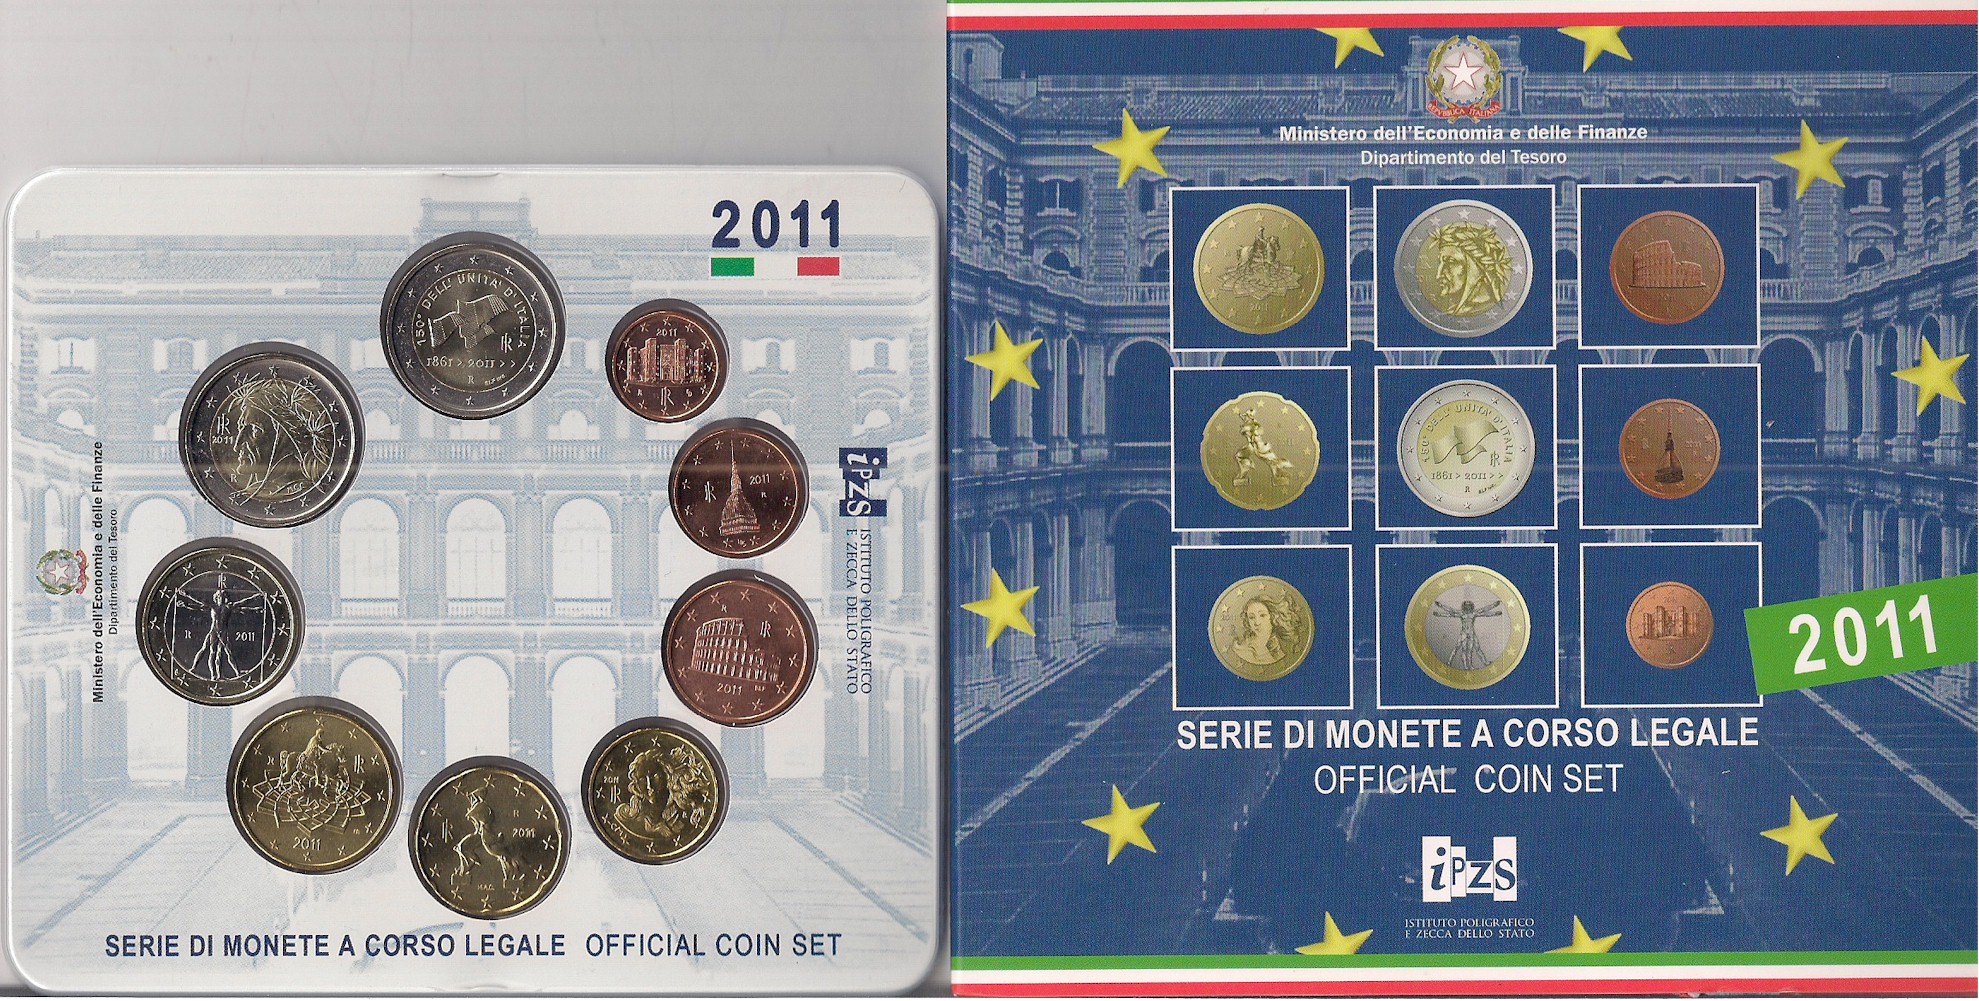 Serie completa di 9 monete in confezione ufficiale con moneta da 2 euro "150 Anniv. Unit d'Italia"